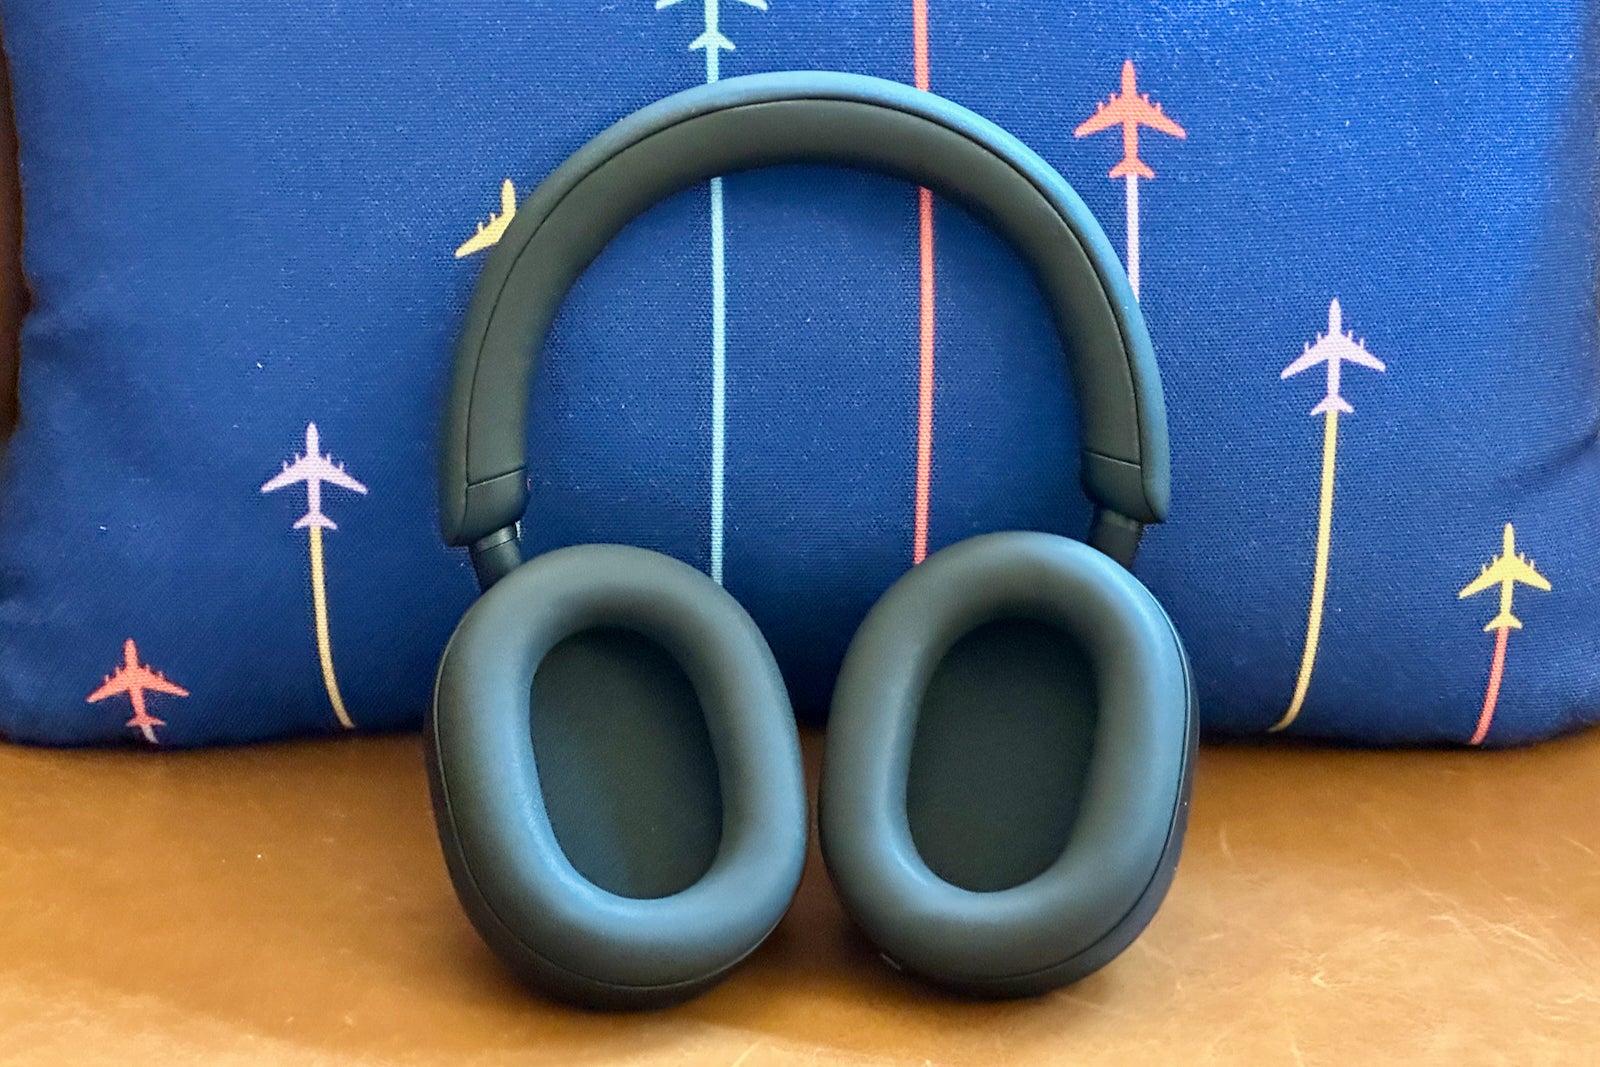 sony bluetooth headphones travel